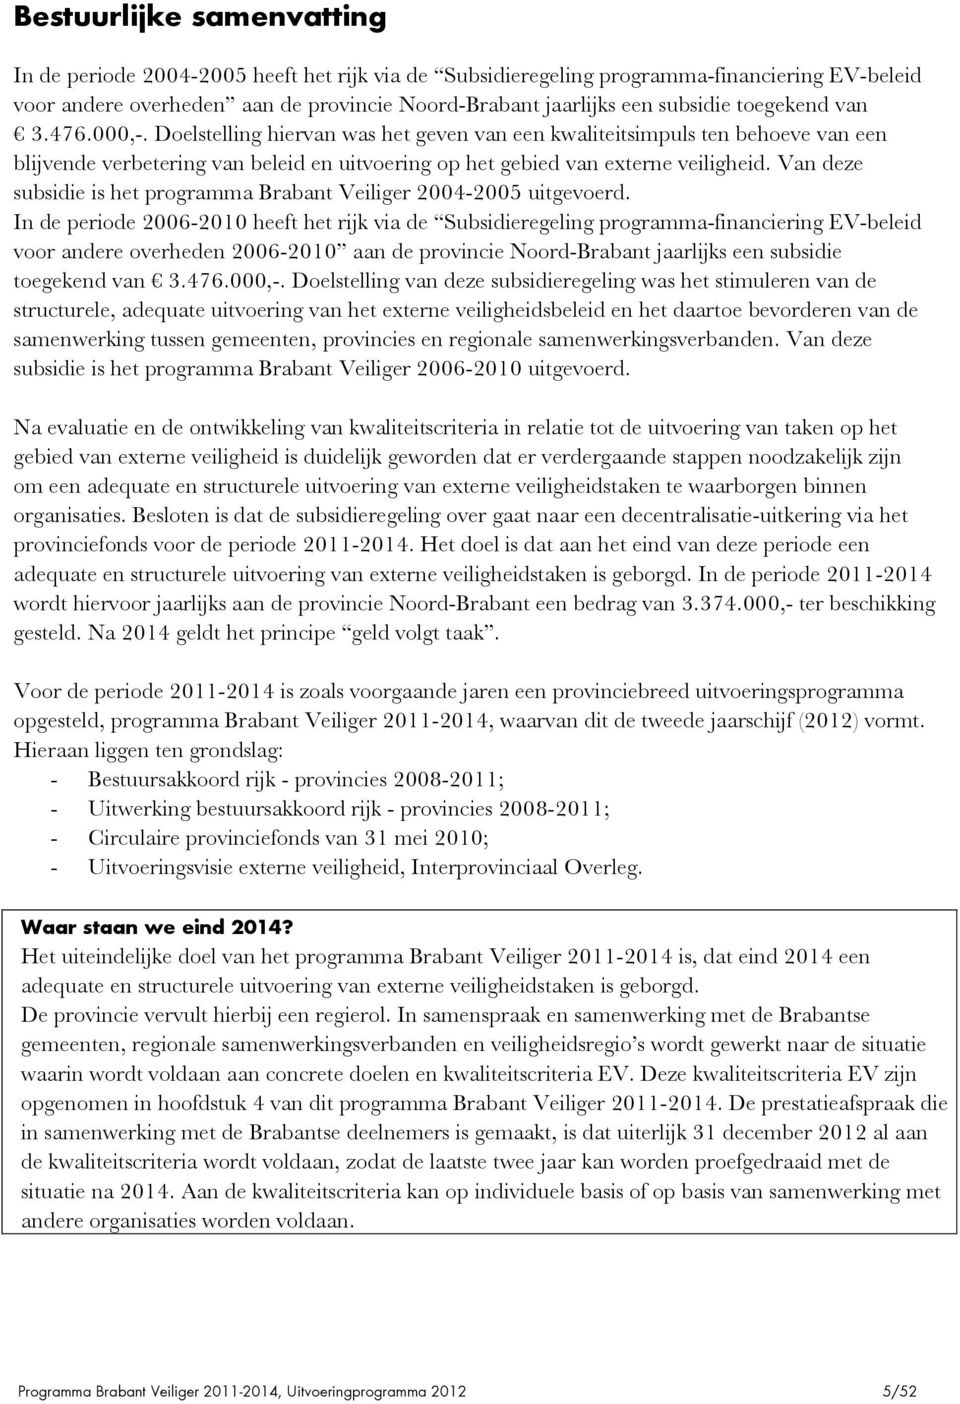 Van deze subsidie is het programma Brabant Veiliger 2004-2005 uitgevoerd.